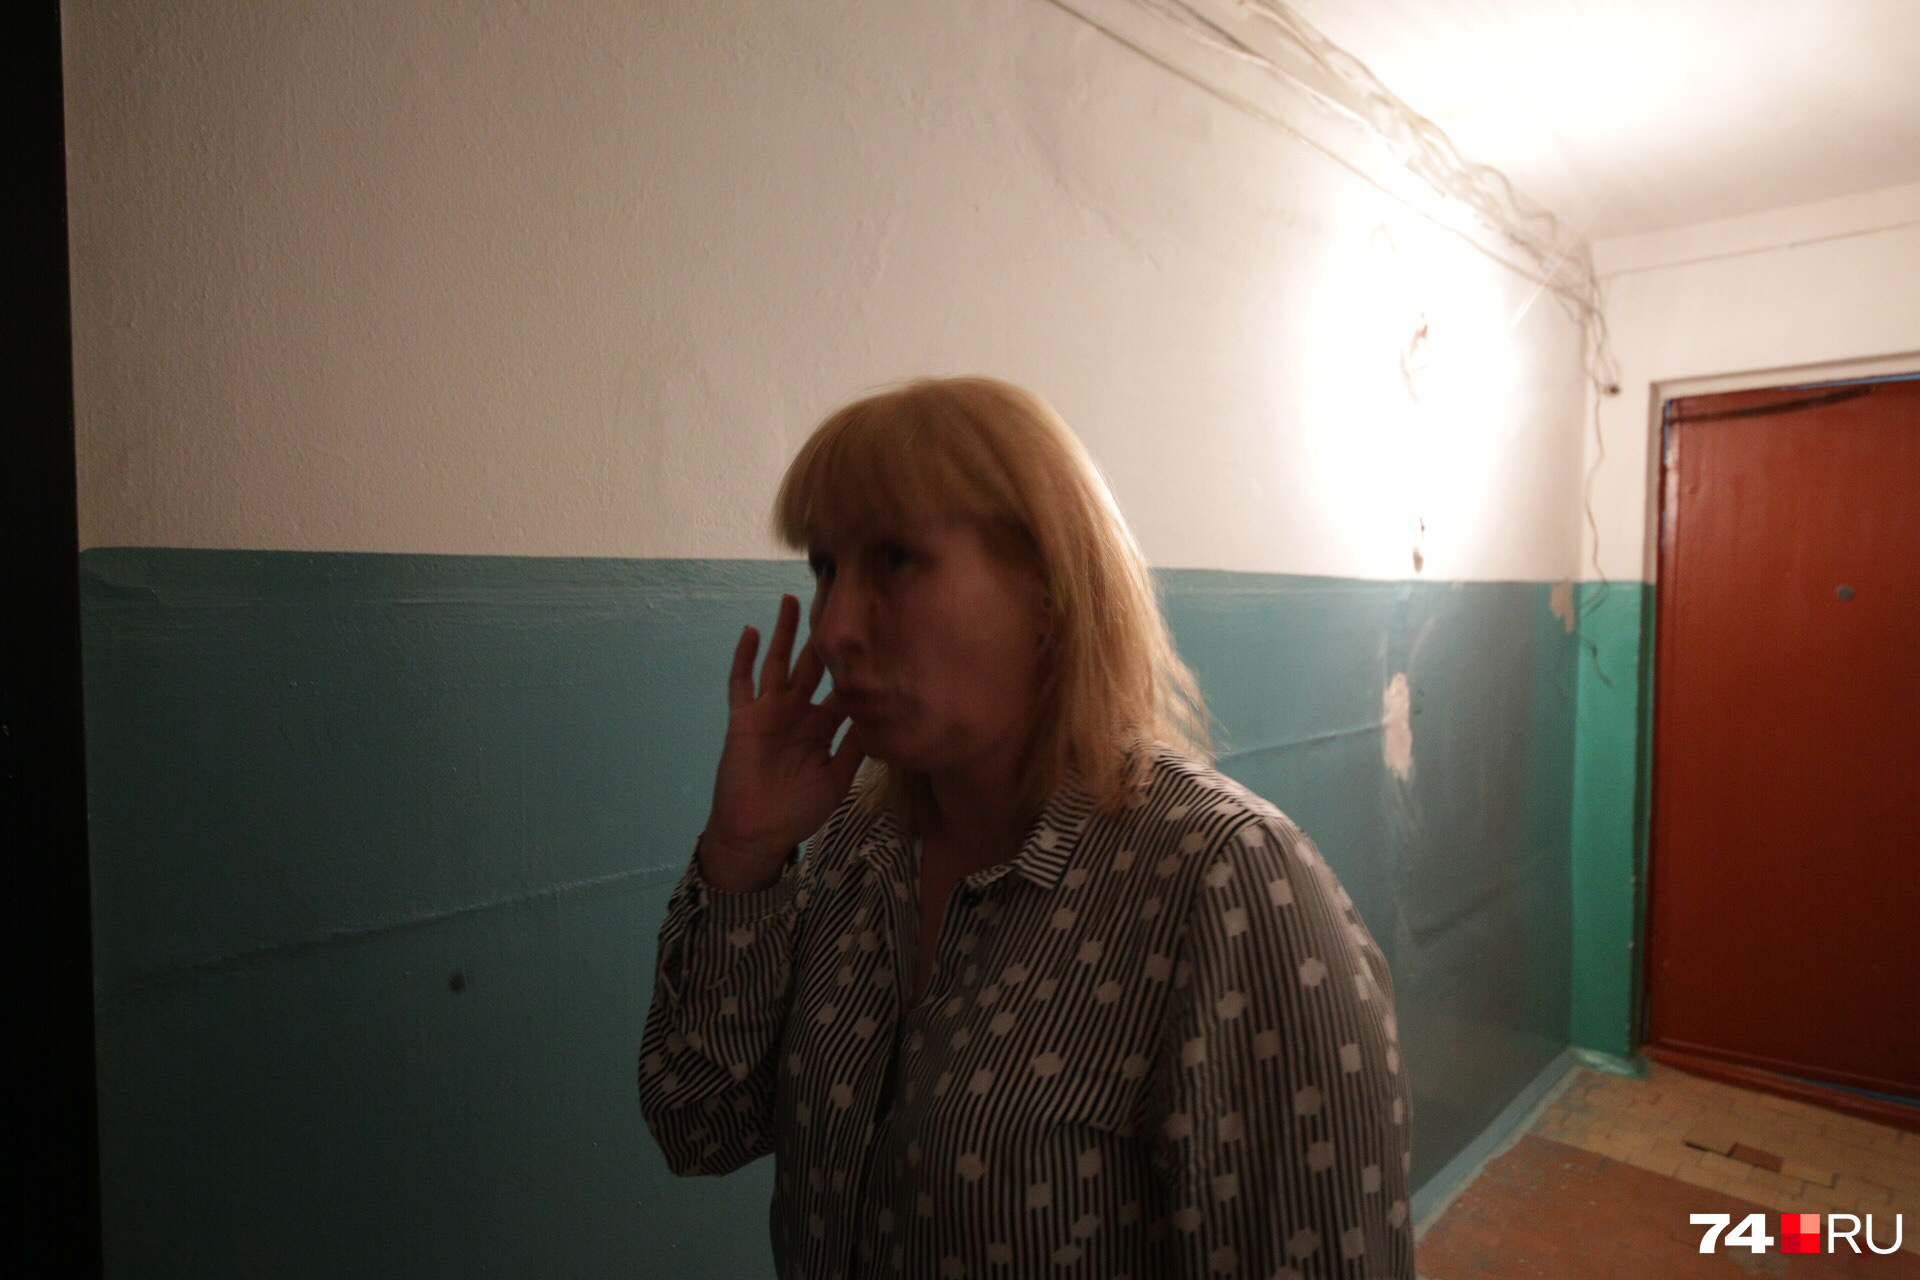 Автор растяжки Татьяна Писарева утверждает, что ее проблемы с жильем так никто и не решил